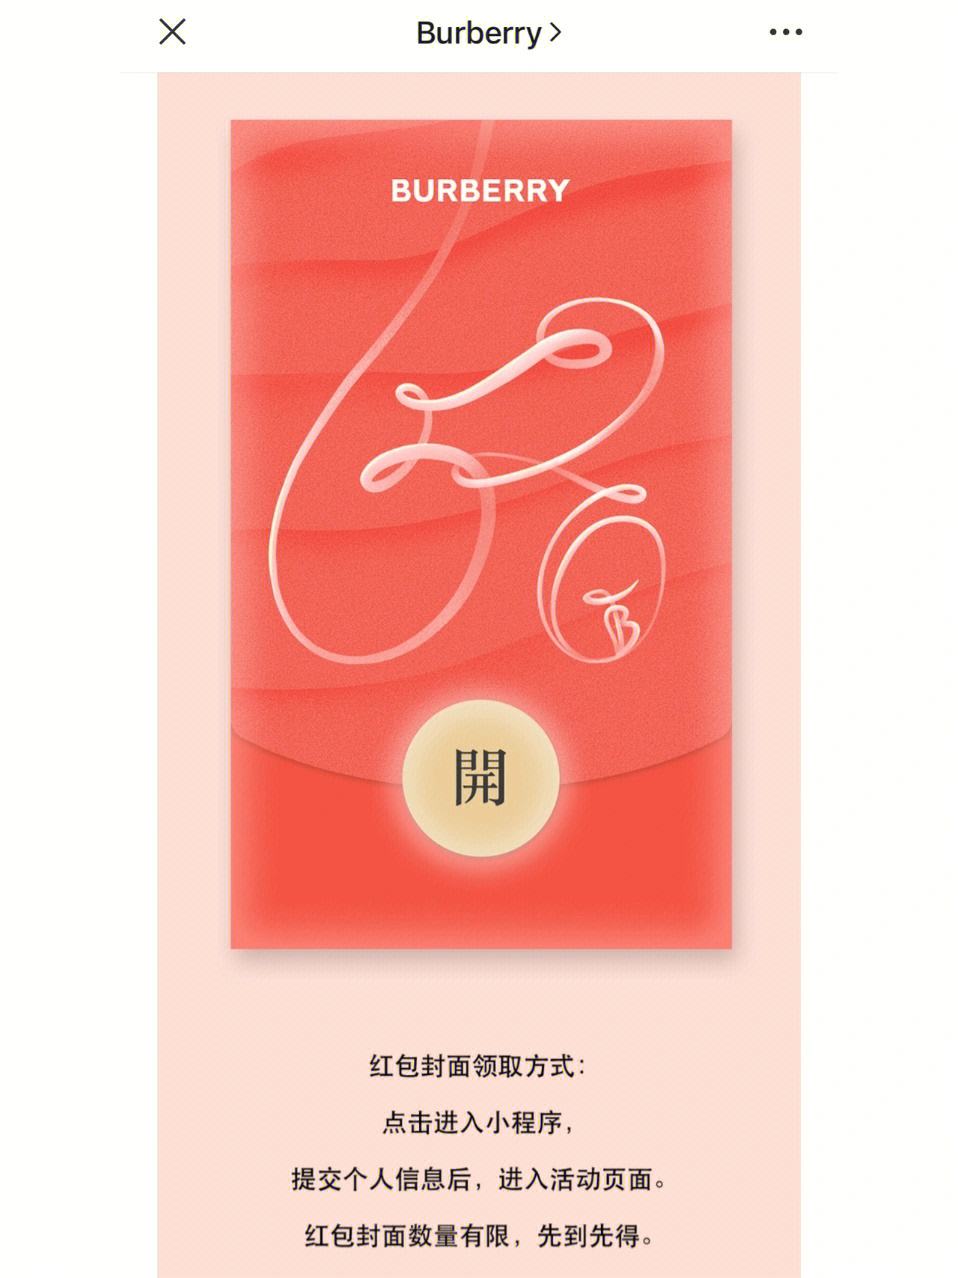 2021burberry红包封面图片